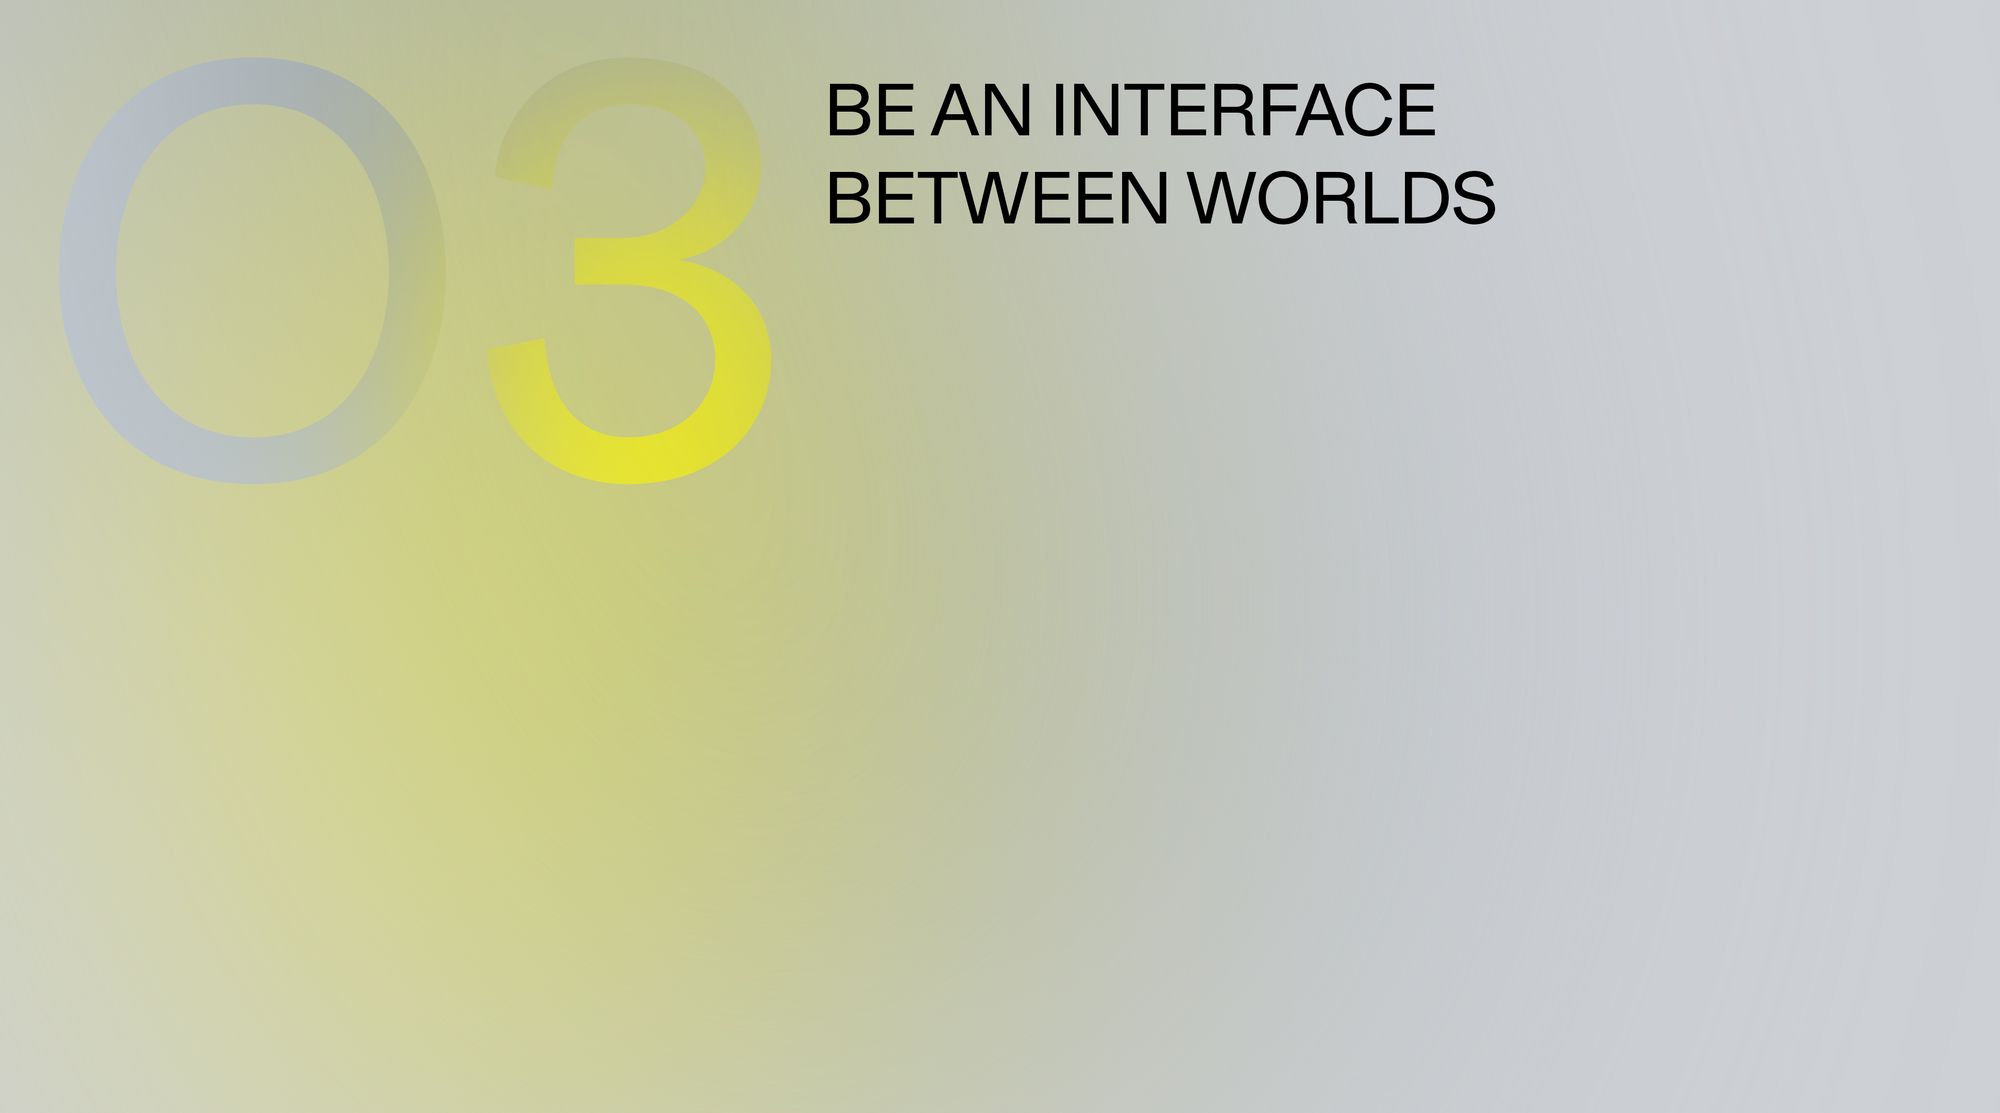 Be an interface between worlds.